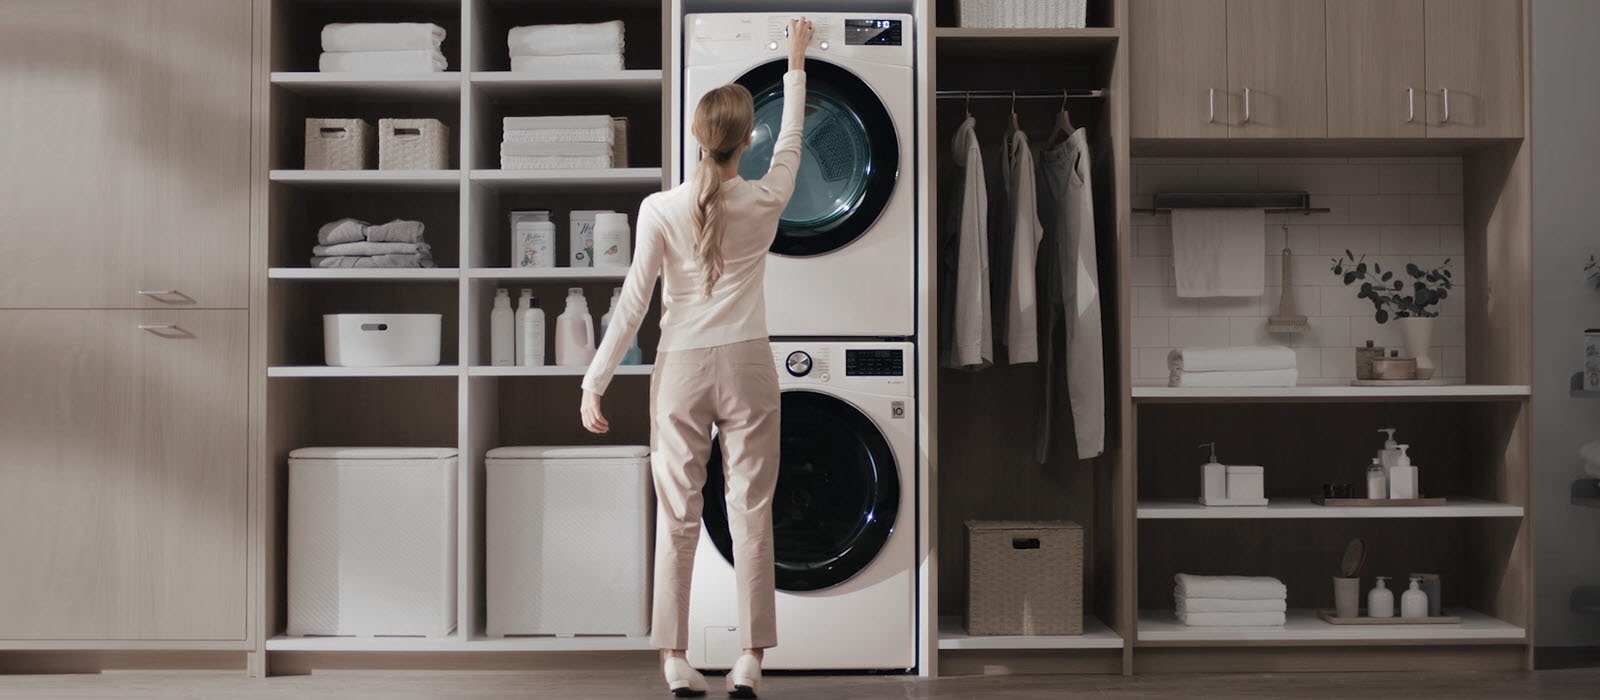 LG Global - ¿Tienes poco espacio en la lavandería de tu casa? ¡No te  preocupes más y ahorra espacio armando la torre de la lavadora y secadora  LG con el Stacking Kit.